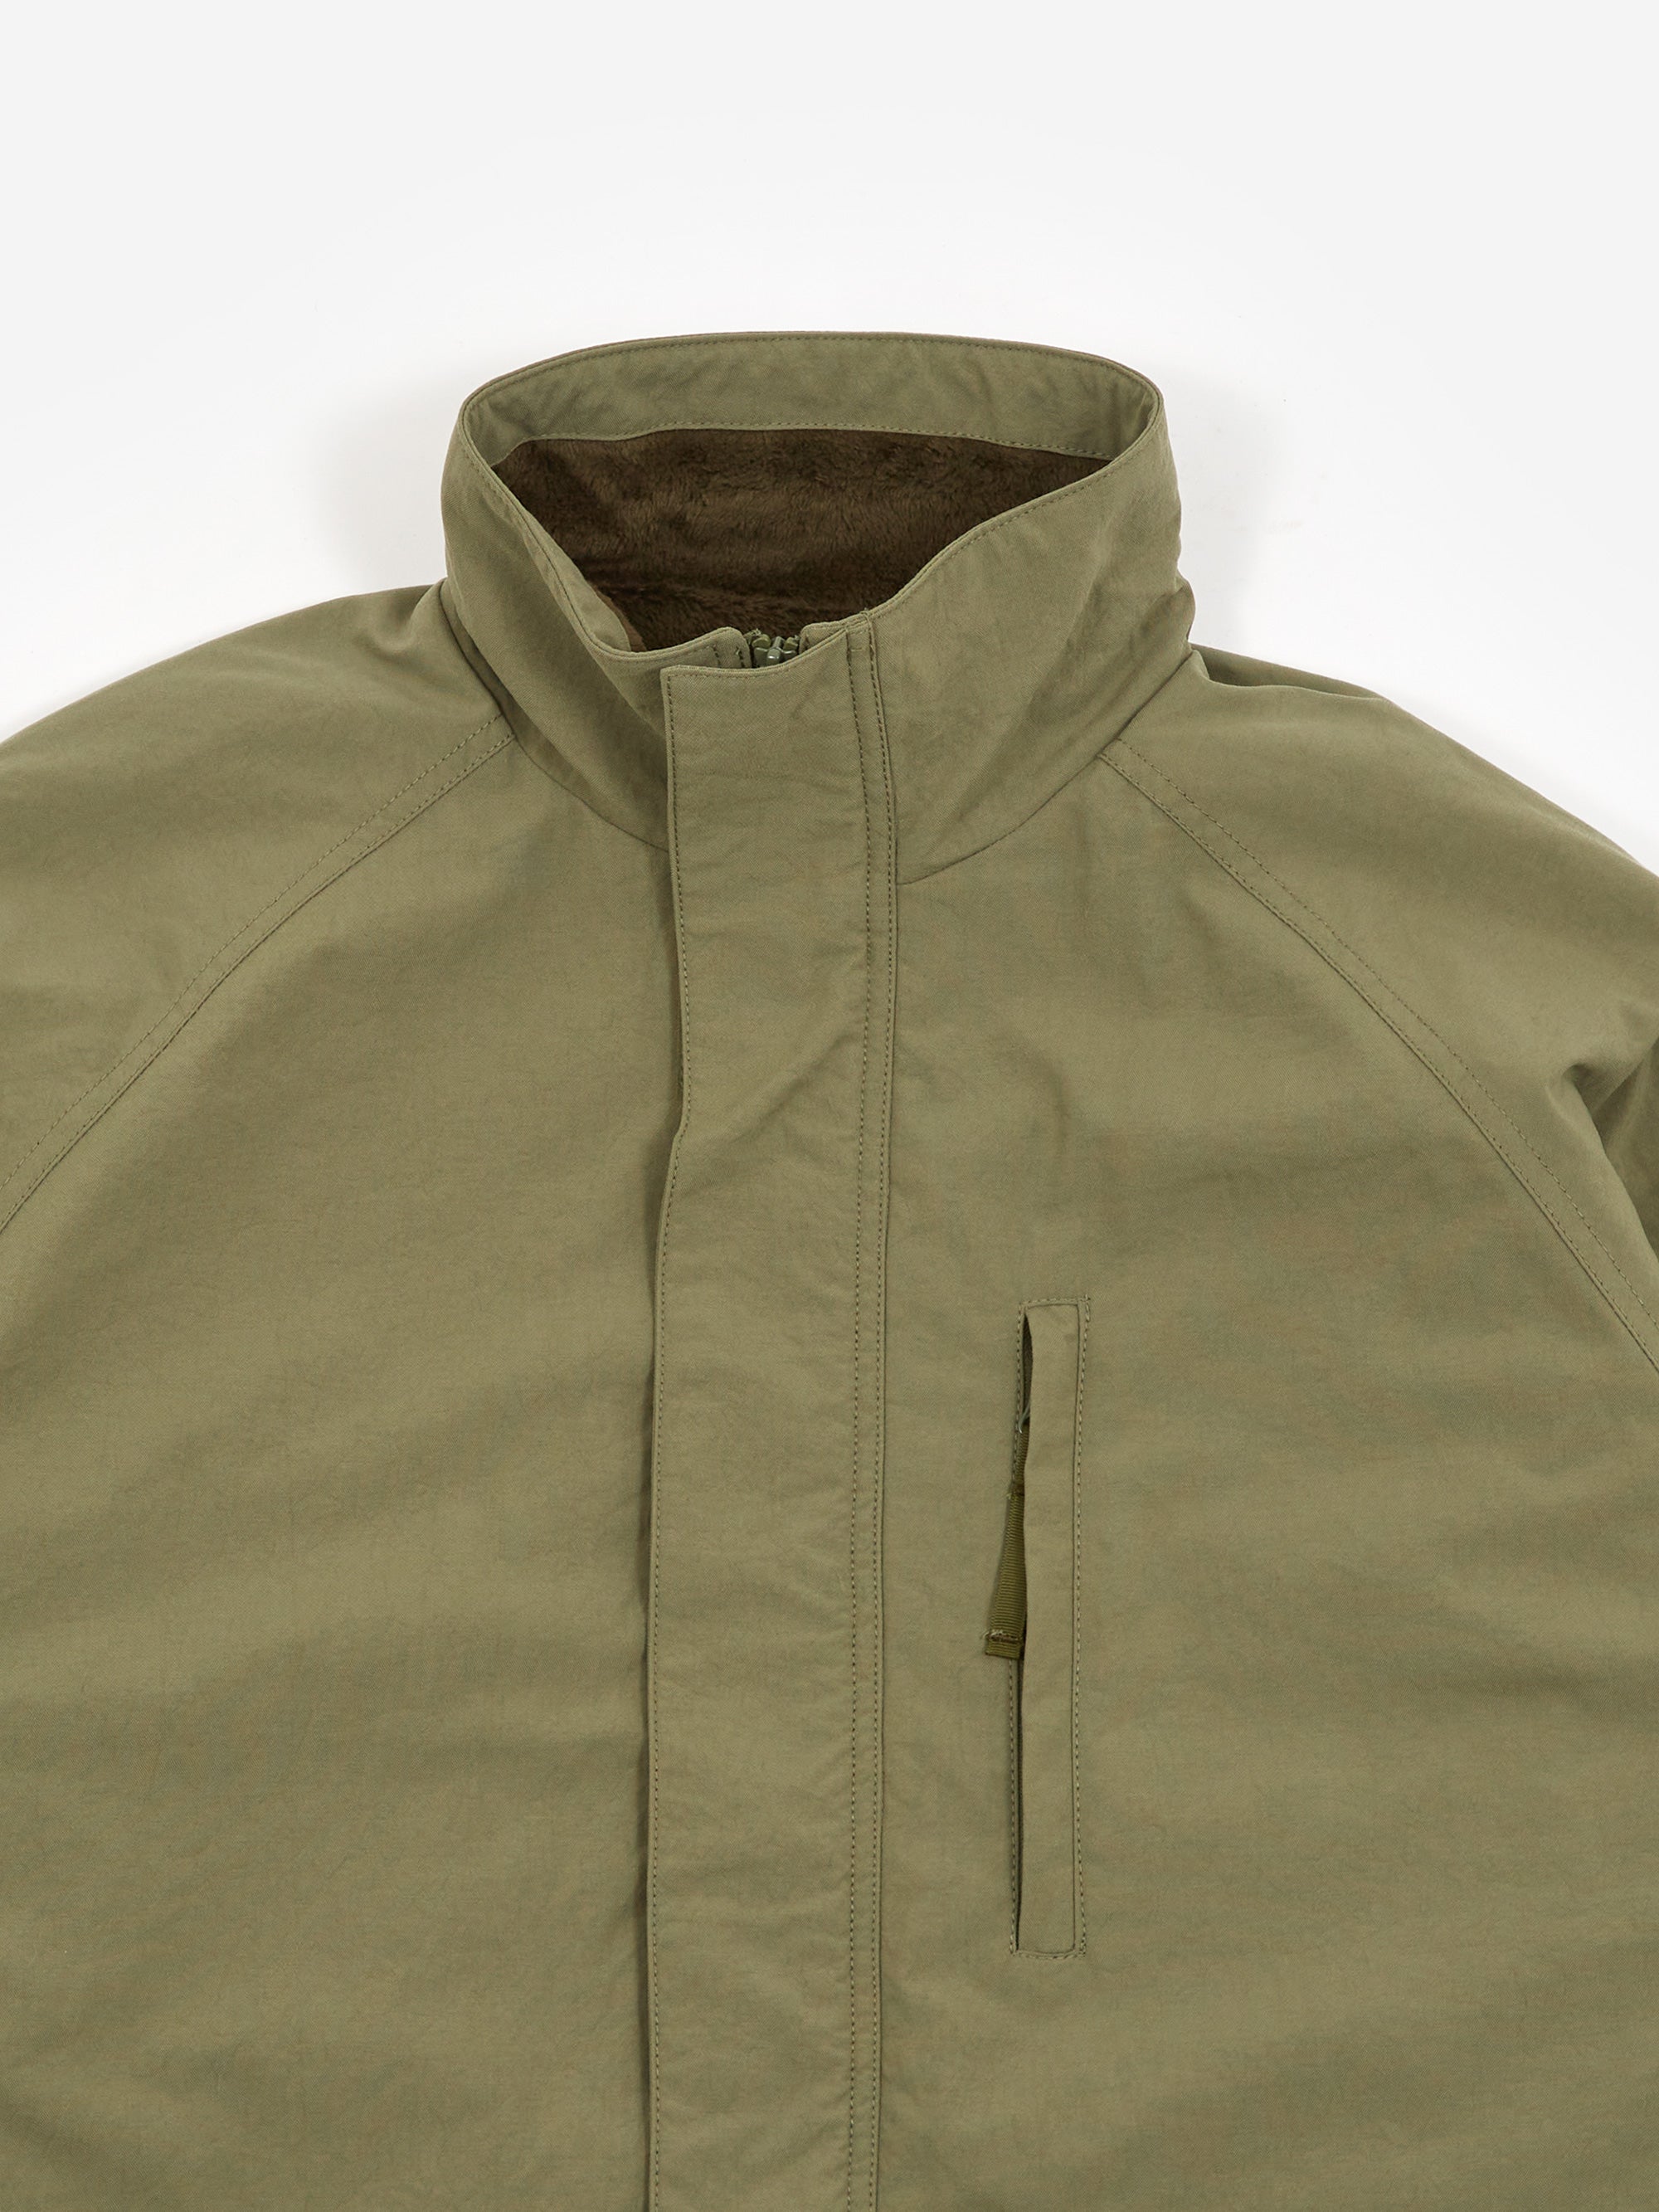 サイズ CAV EMPT C.E zip jacket Lサイズの通販 by たくみん's shop